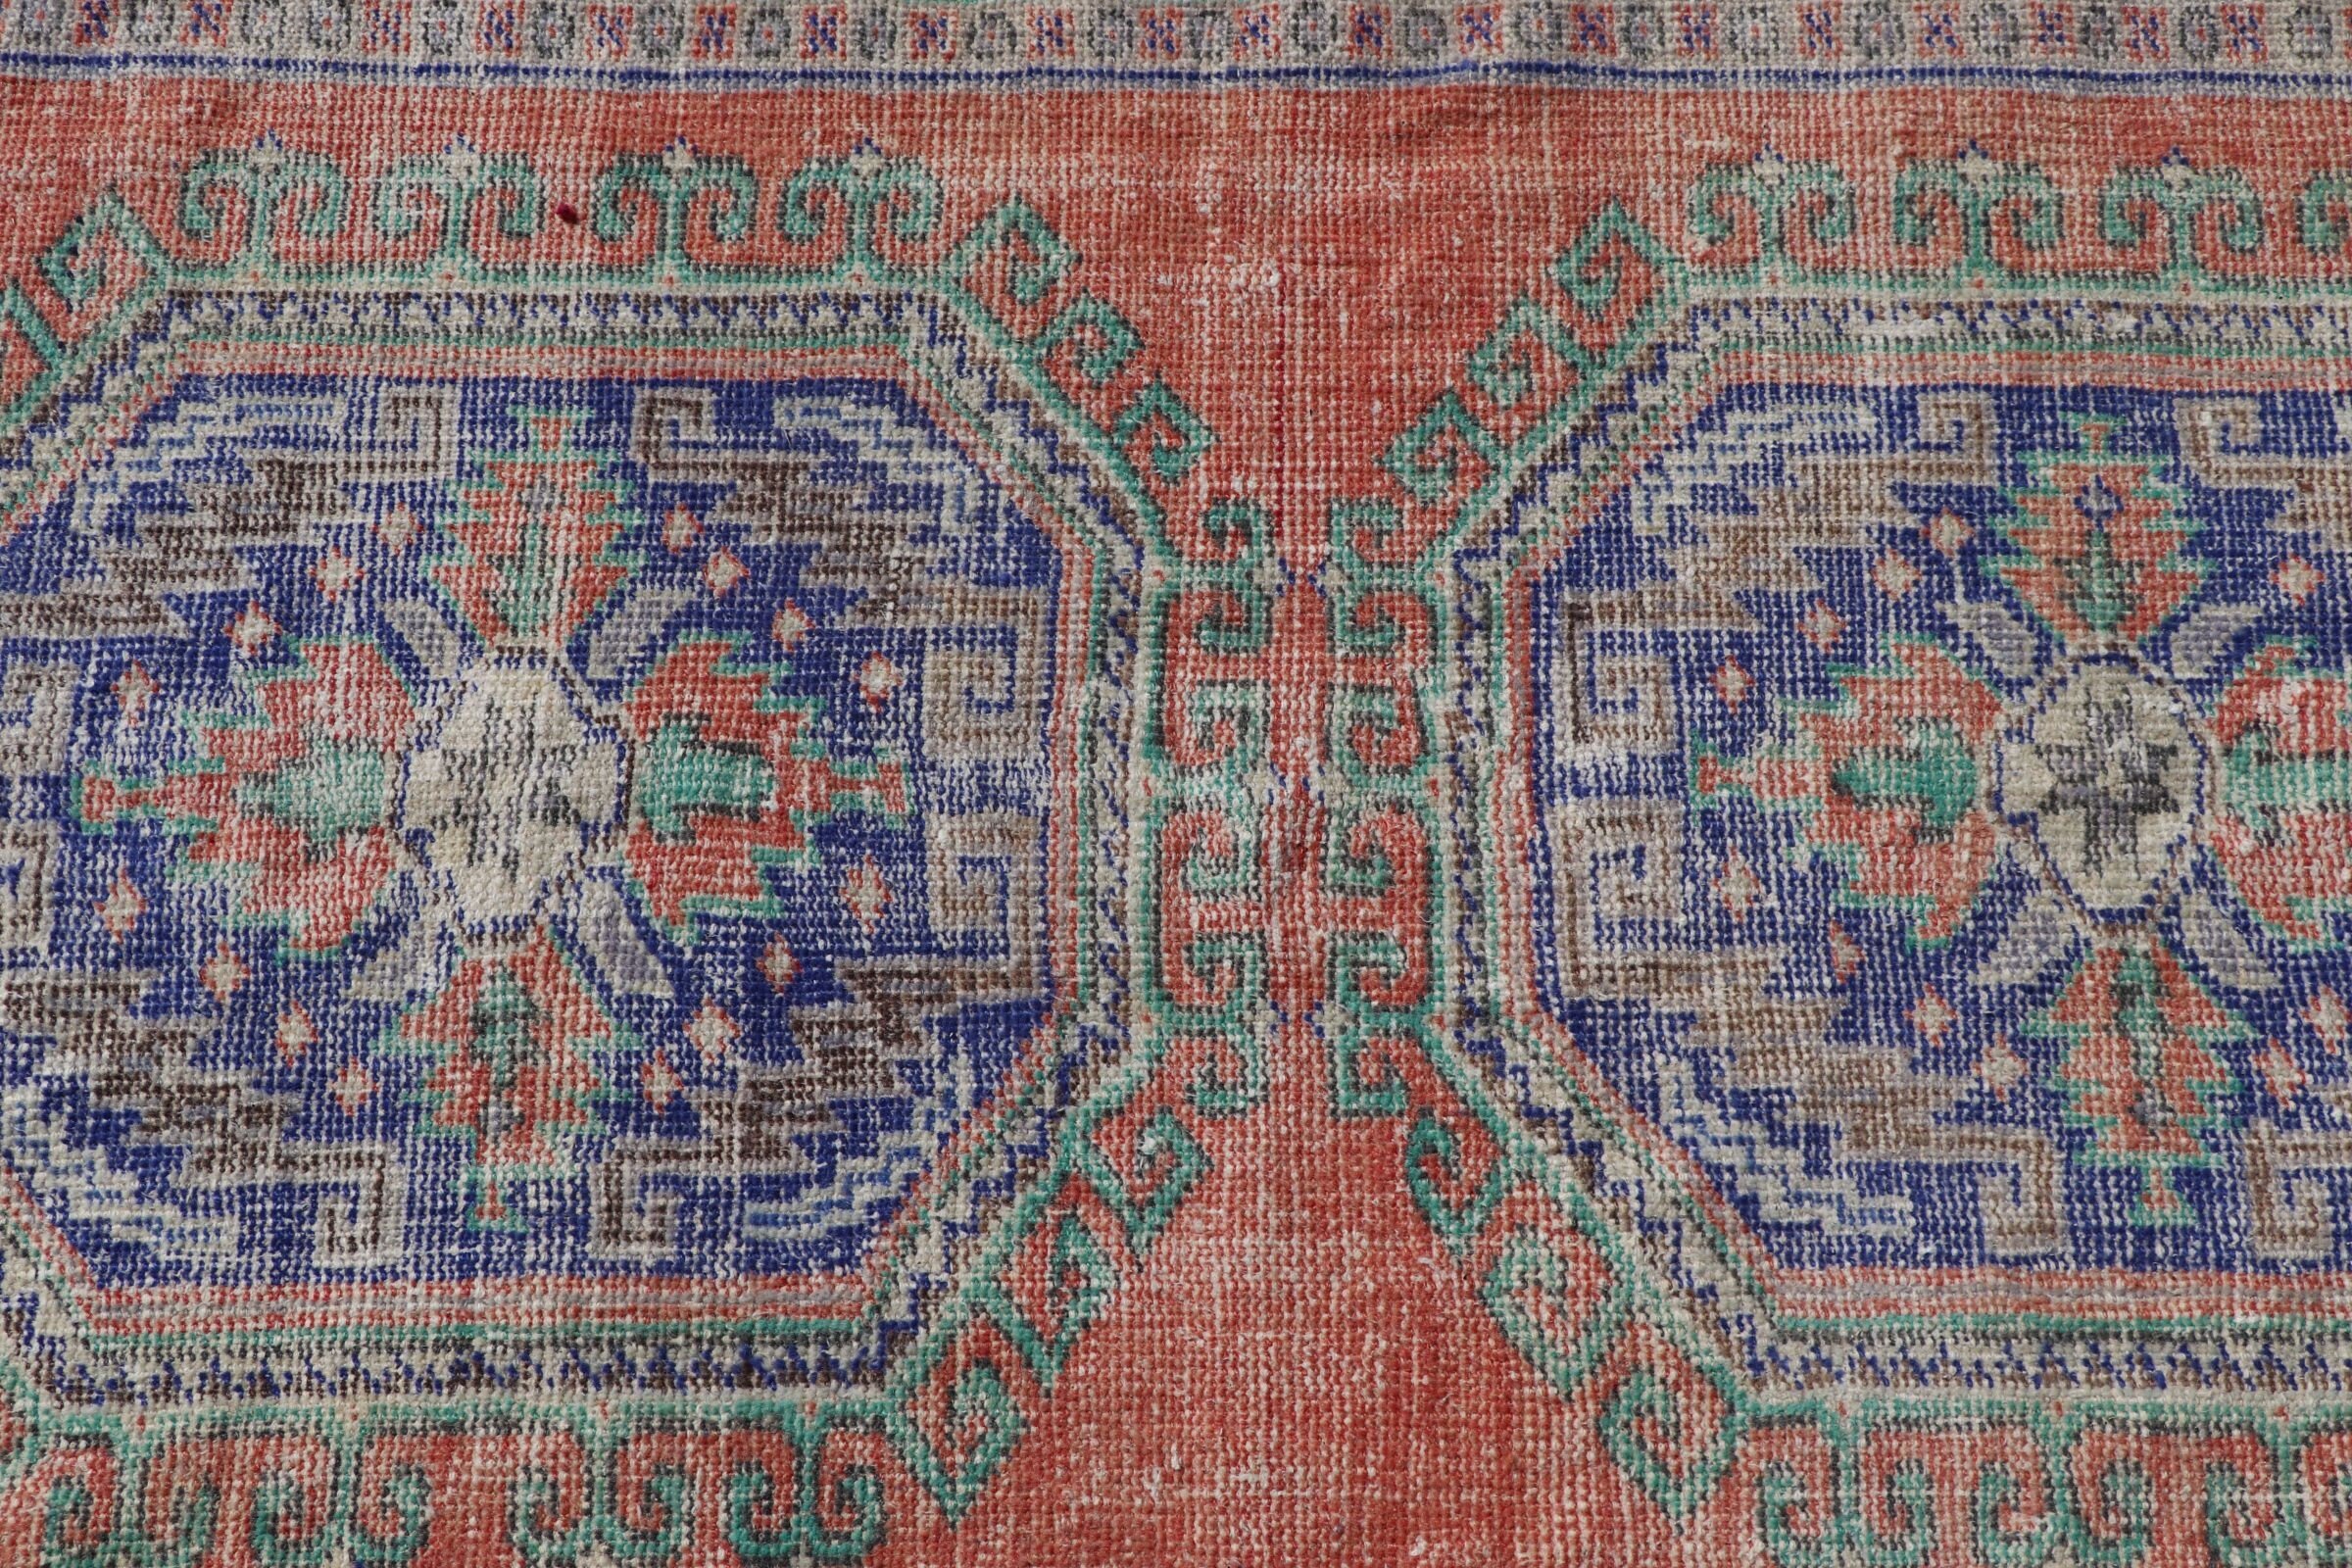 Turkish Rug, Rugs for Bedroom, Floor Rug, Pale Rug, Red Anatolian Rug, Nursery Rug, 4x6.2 ft Area Rugs, Vintage Rug, Oriental Rug, Cool Rug